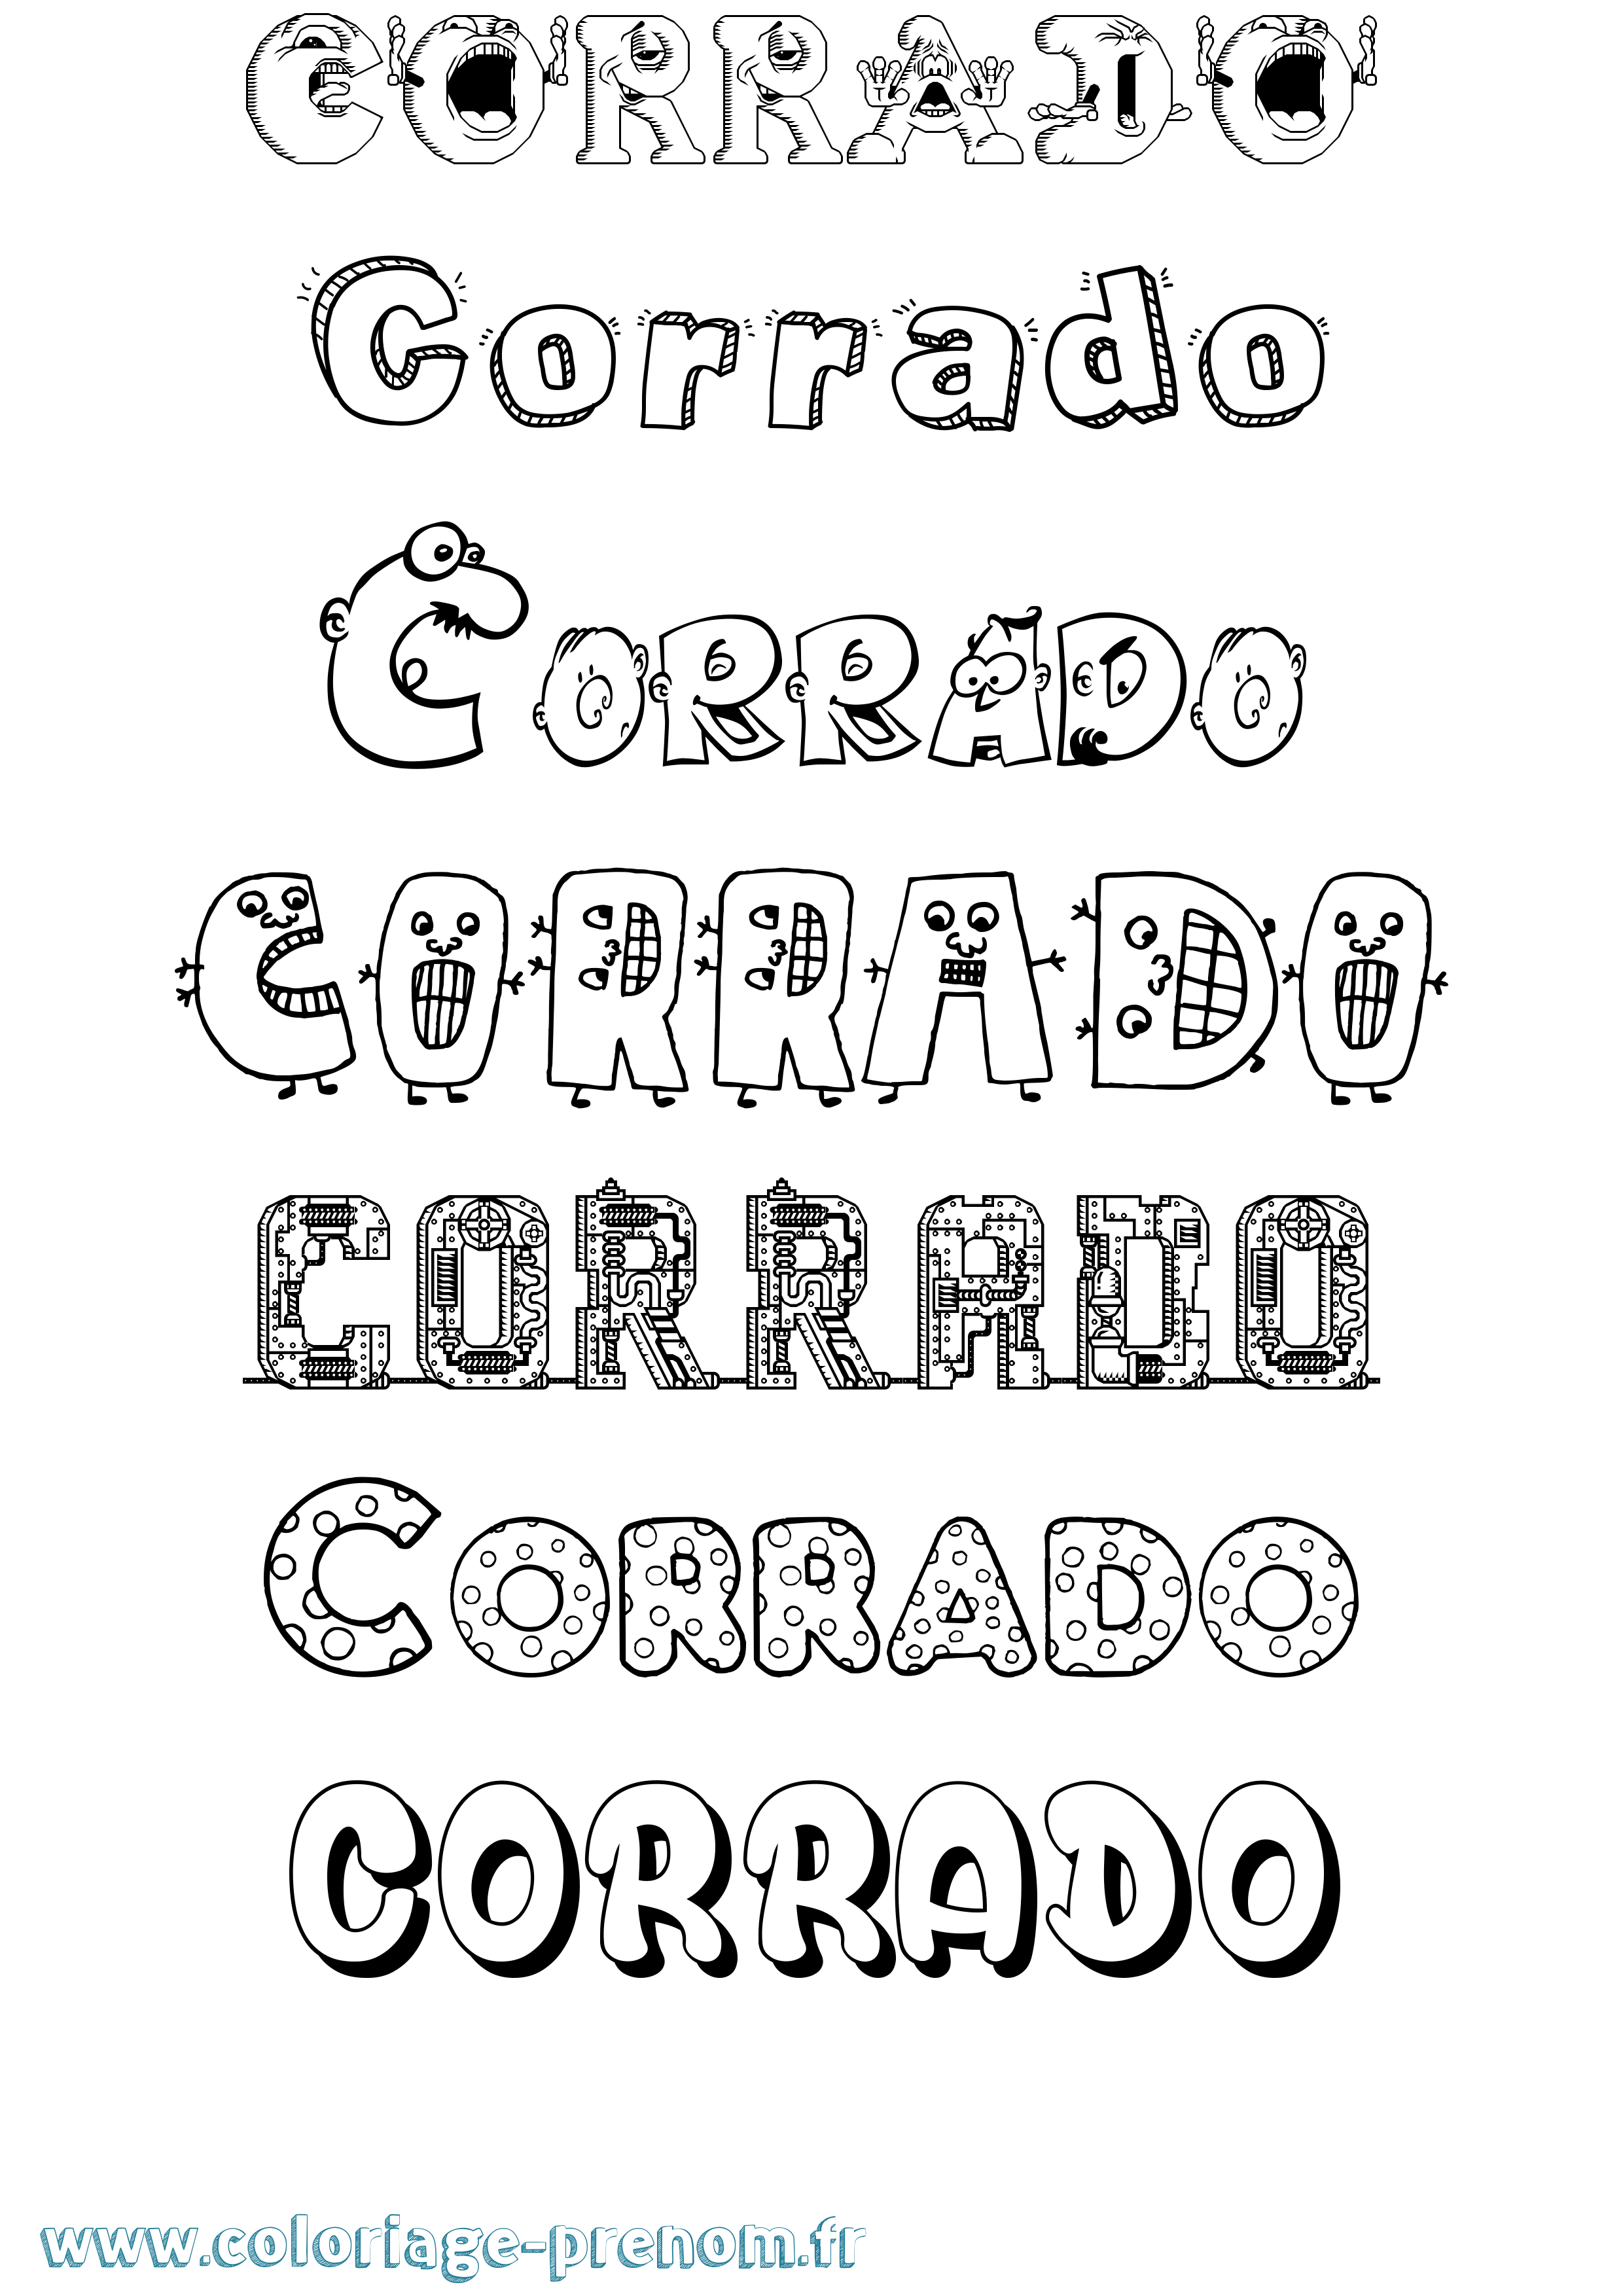 Coloriage prénom Corrado Fun